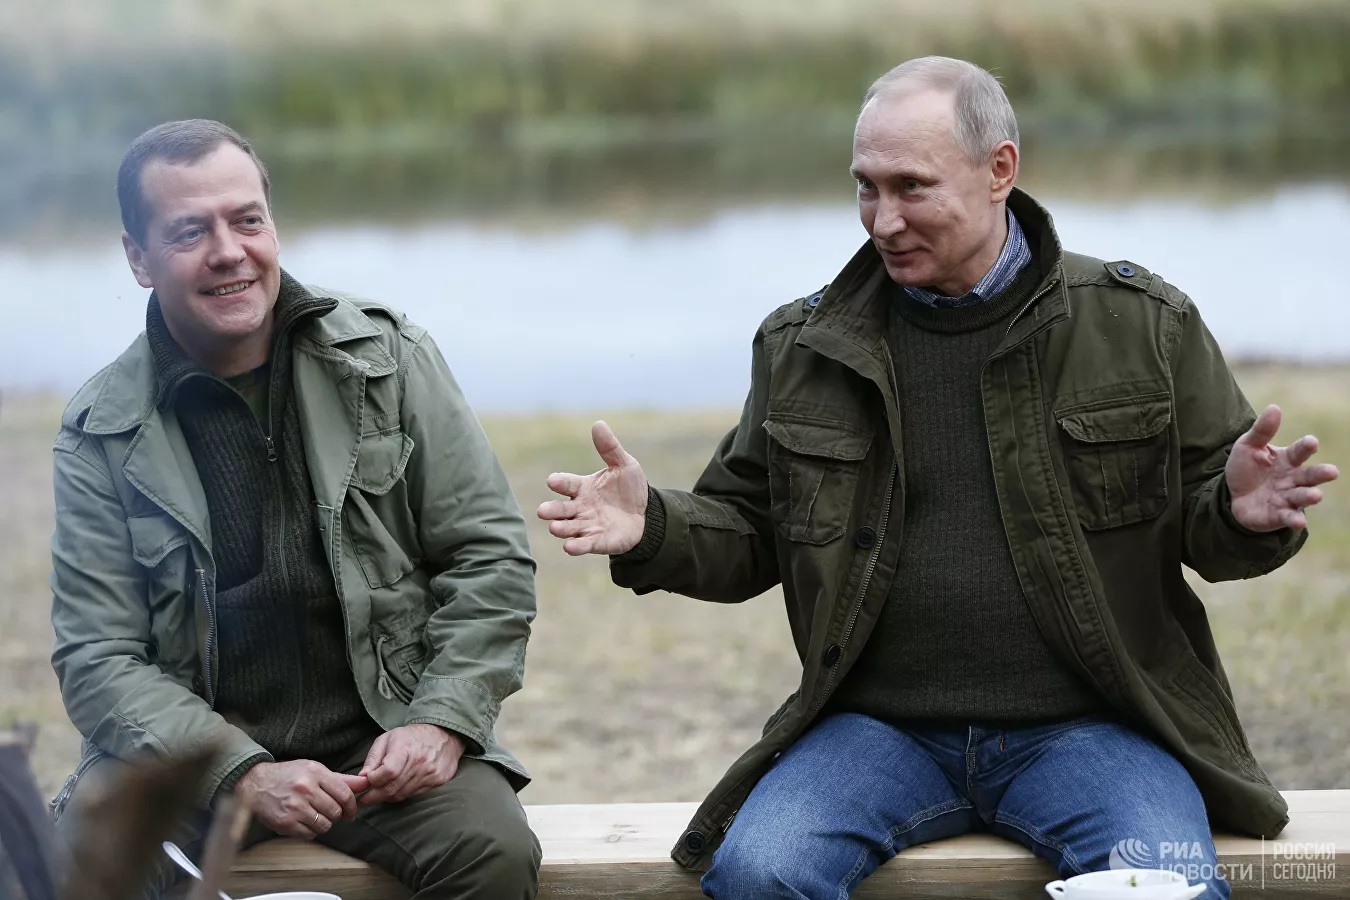 Nga,Tổng thống Nga Vladimir Putin,20 năm cầm quyền,chính trị Nga,Moscow,điện Kremlin